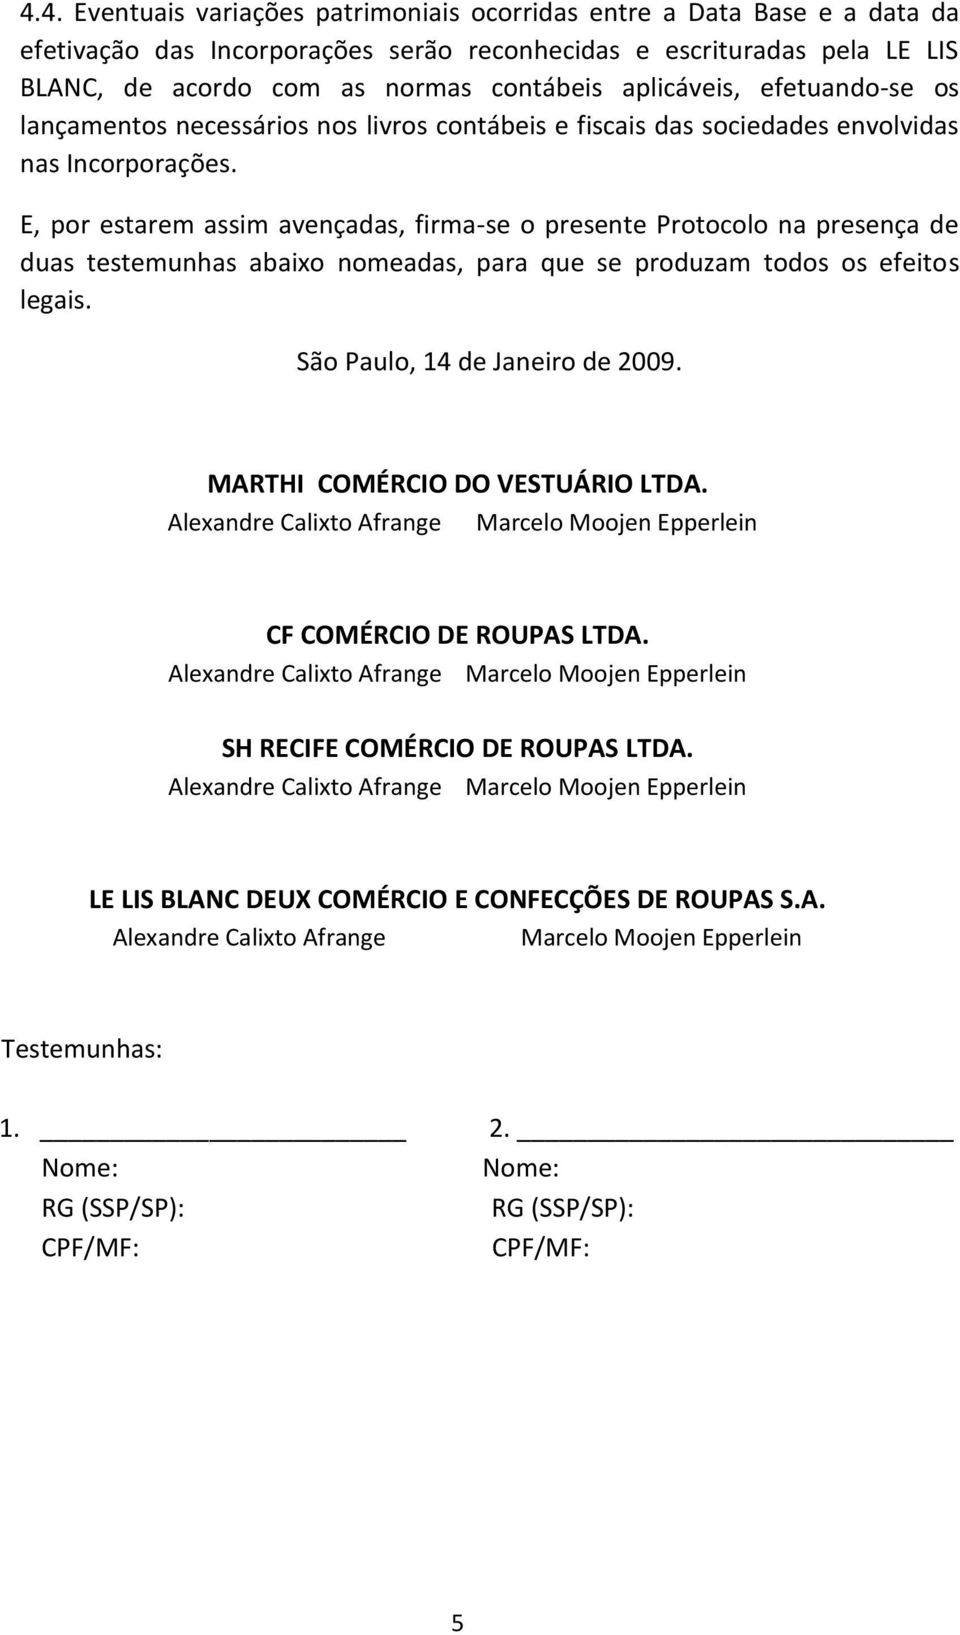 E, por estarem assim avençadas, firma-se o presente Protocolo na presença de duas testemunhas abaixo nomeadas, para que se produzam todos os efeitos legais. São Paulo, 14 de Janeiro de 2009.